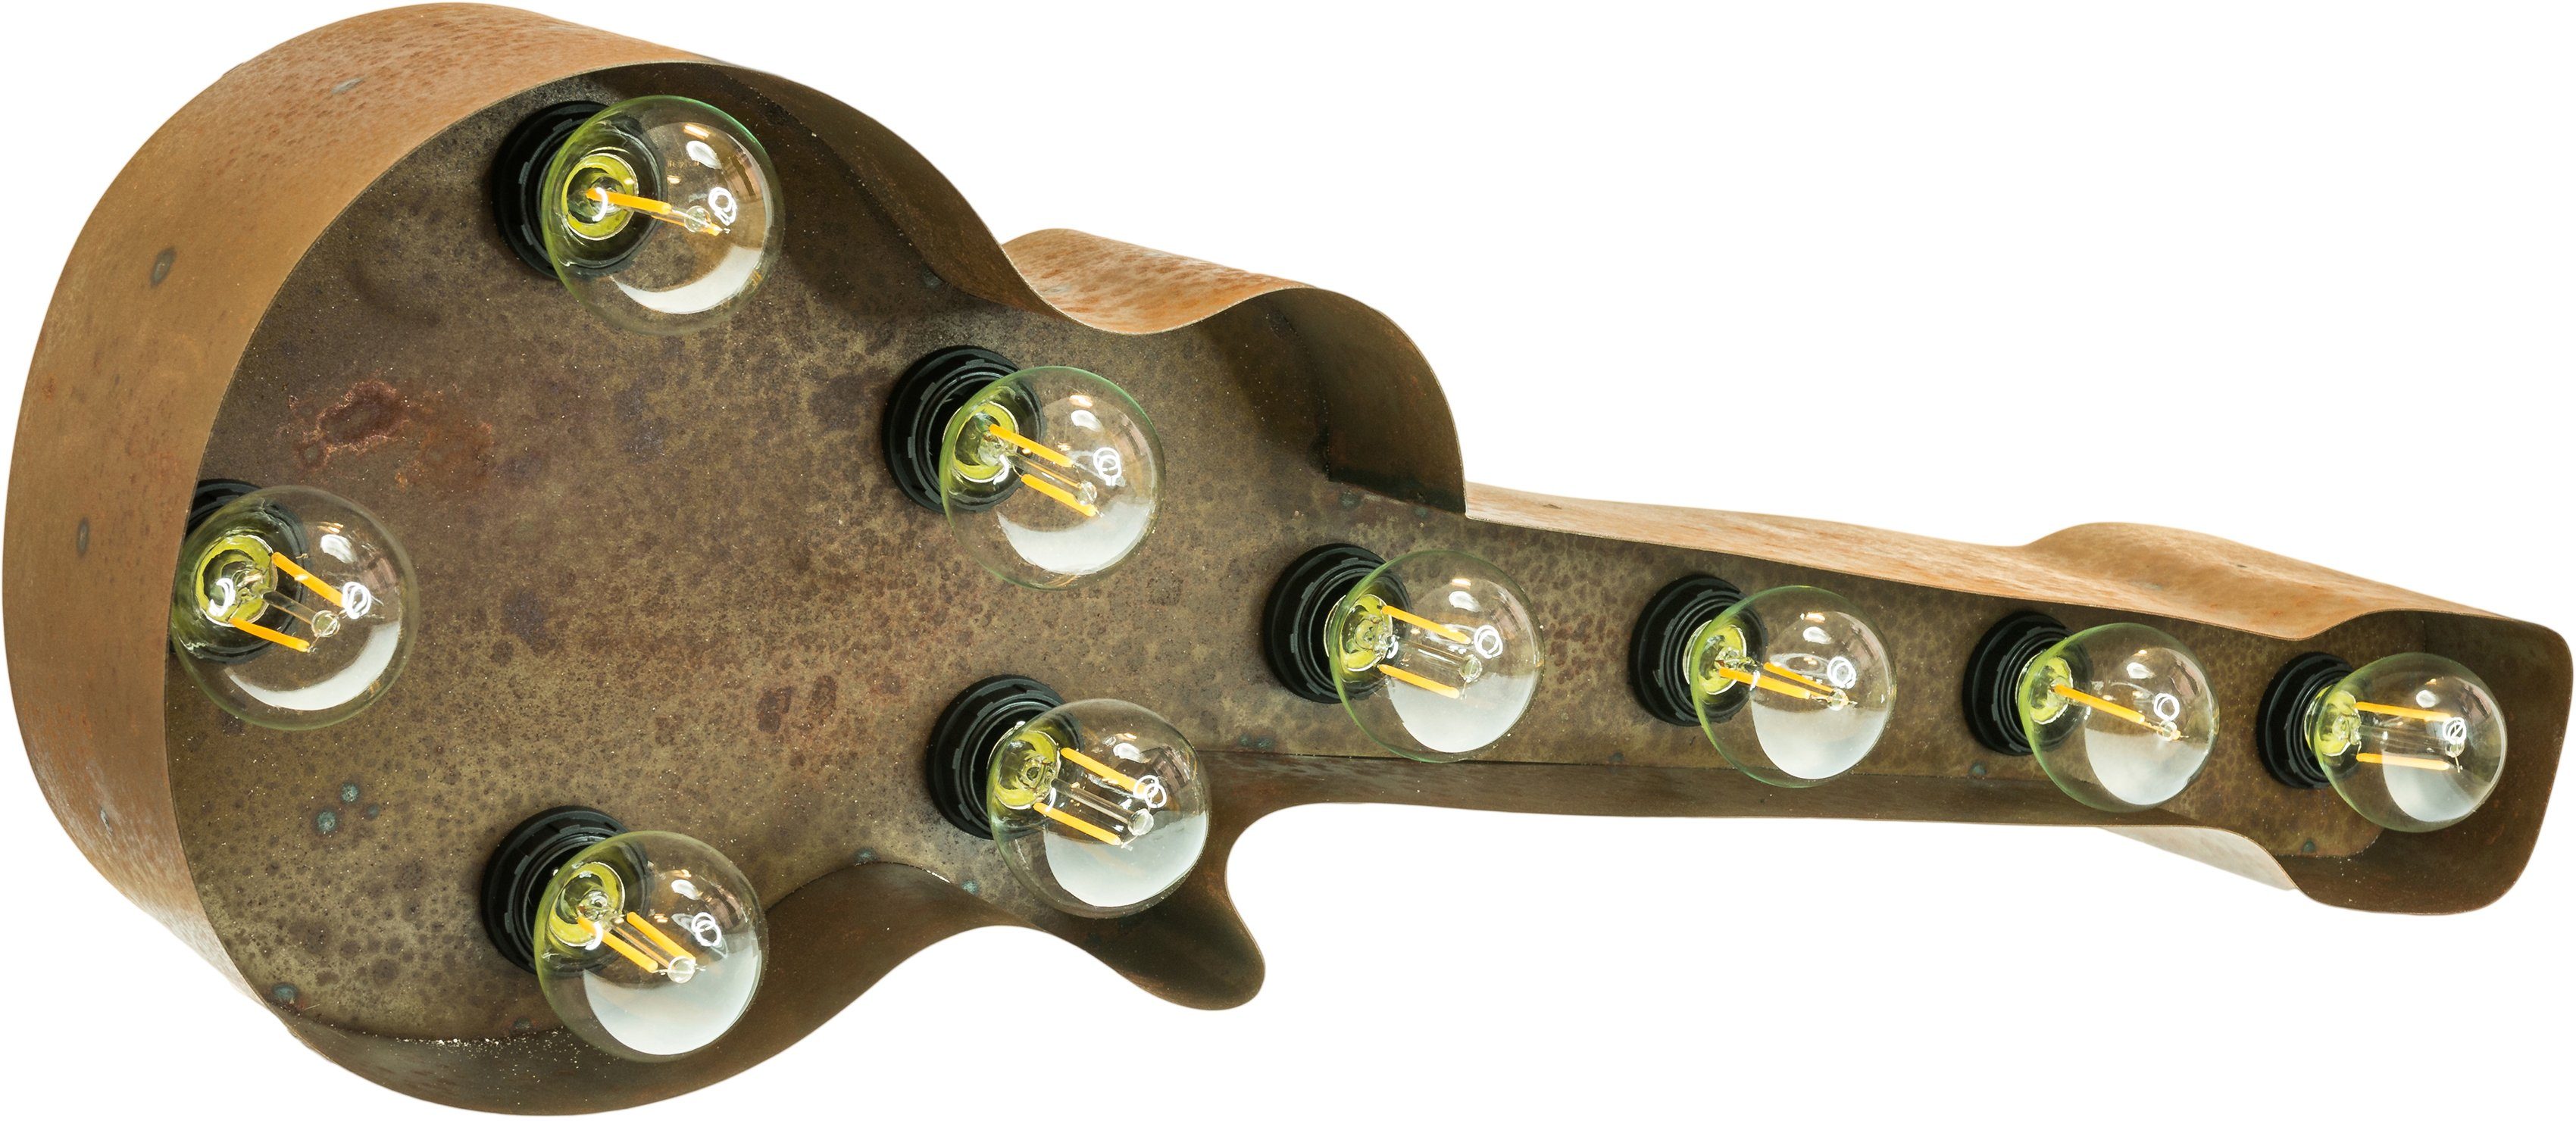 Old Guitar Wandlampe, E14 LIGHTS LED 61x38cm Old Lichtquellen 9 (exkl) Leuchtmittel, Guitar, Dekolicht Warmweiß, - ohne Tischlampe braun MARQUEE